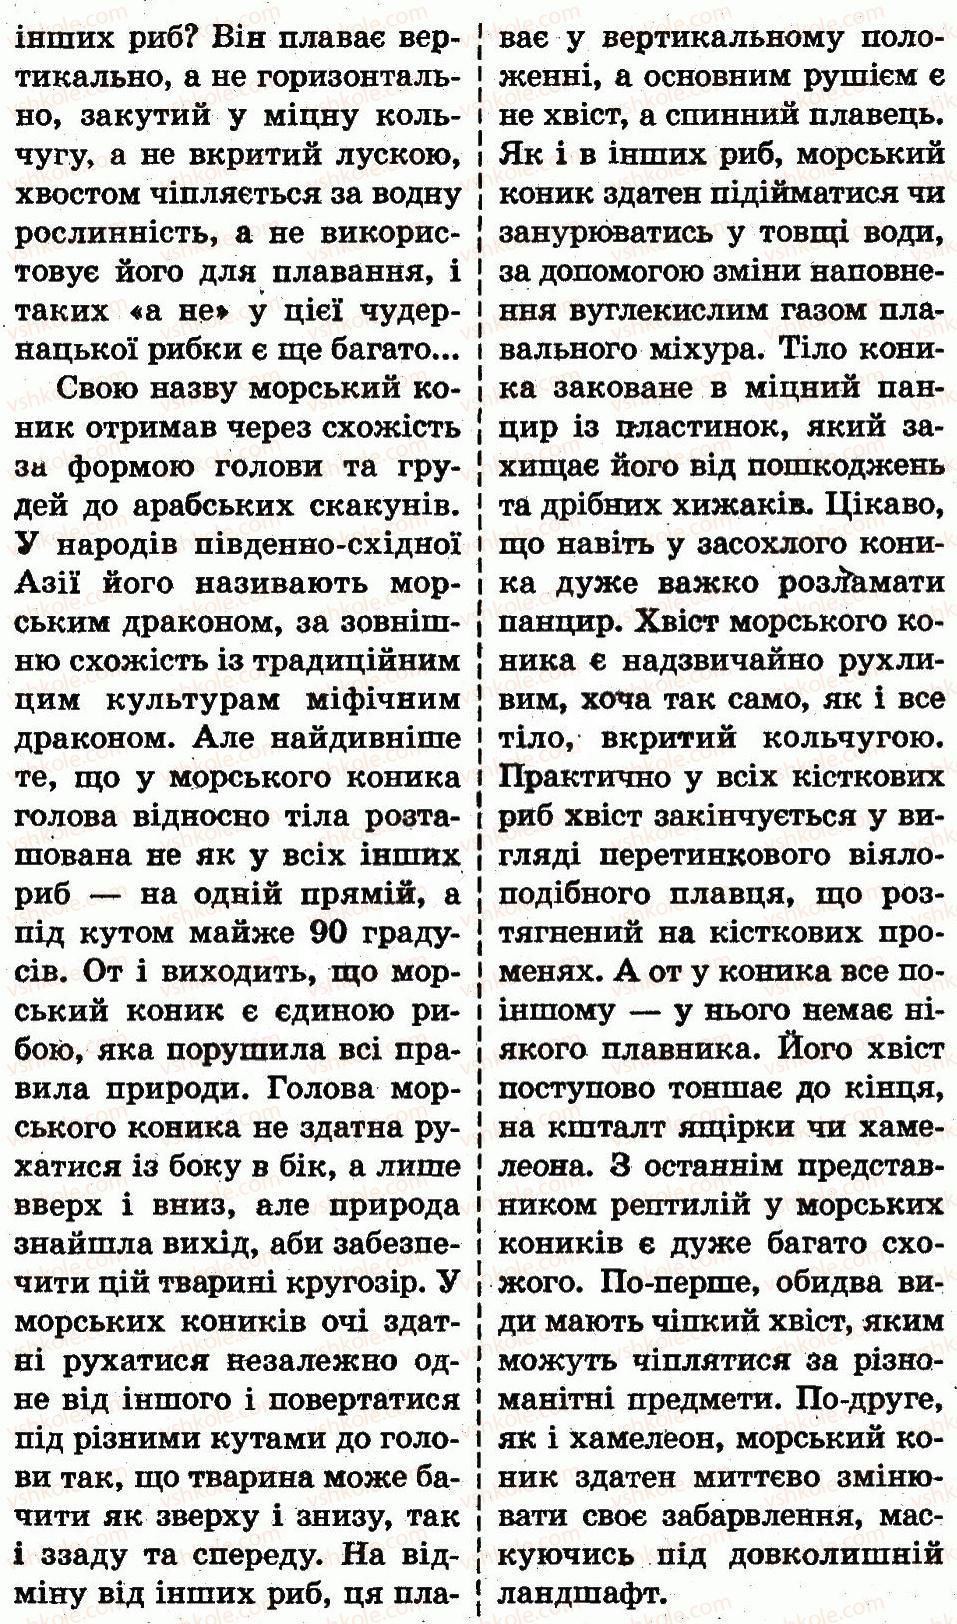 1-prirodoznavstvo-i-v-gruschinska-2012--mandrivka-pyata-nasha-krayinaukrayina-сторінка126-rnd1503.jpg